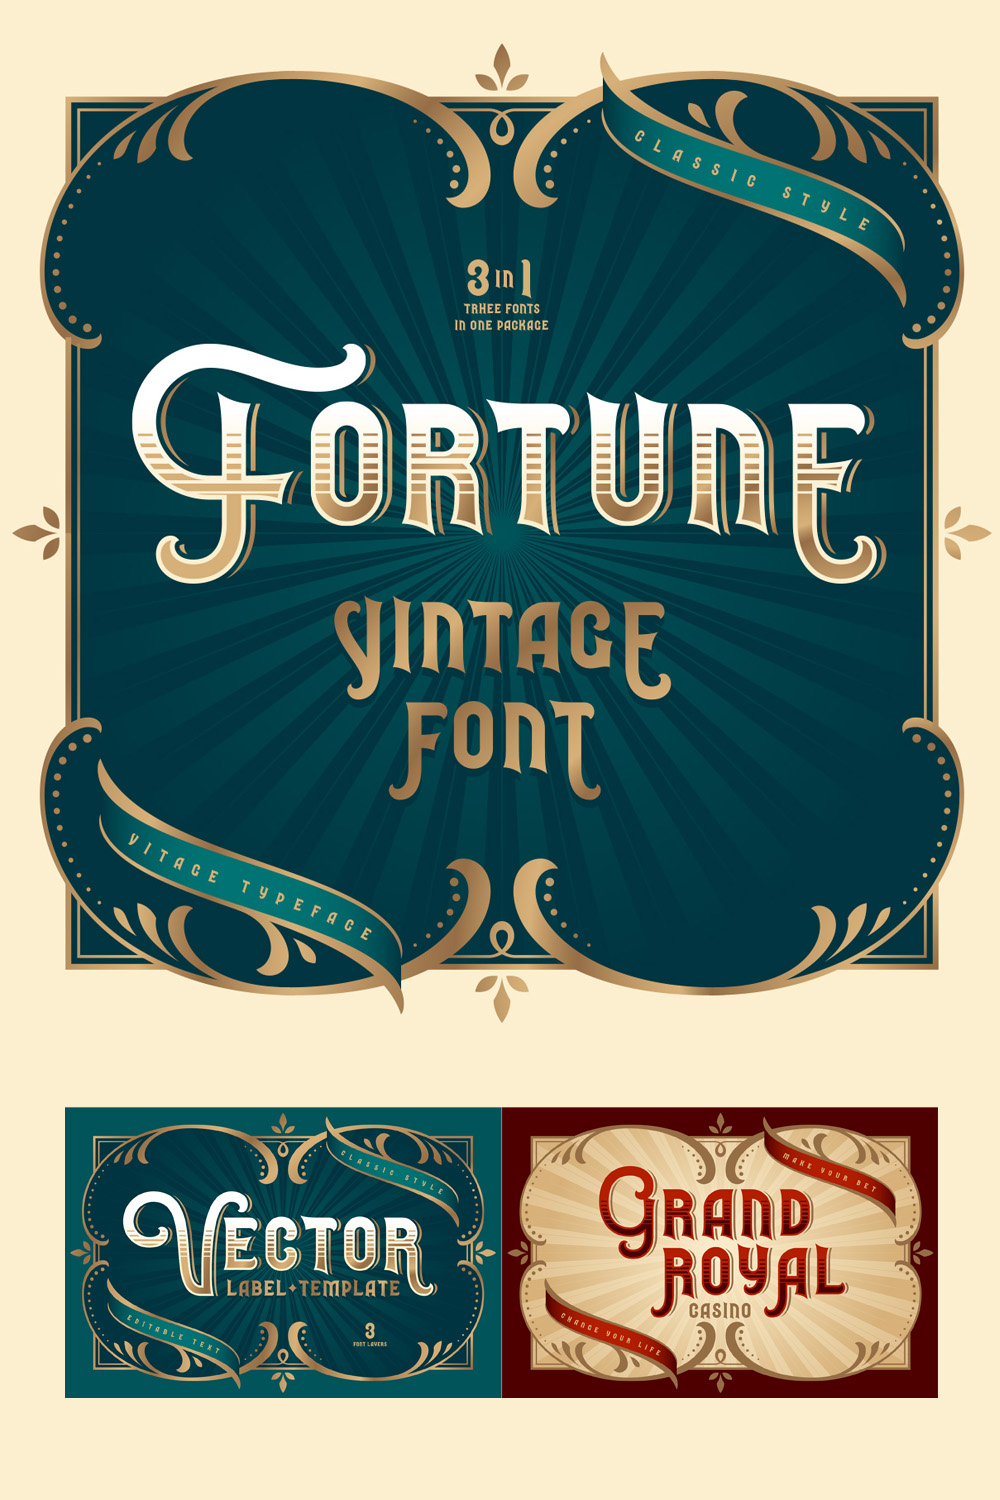 Fortune Vintage Font Pinterest collage image.